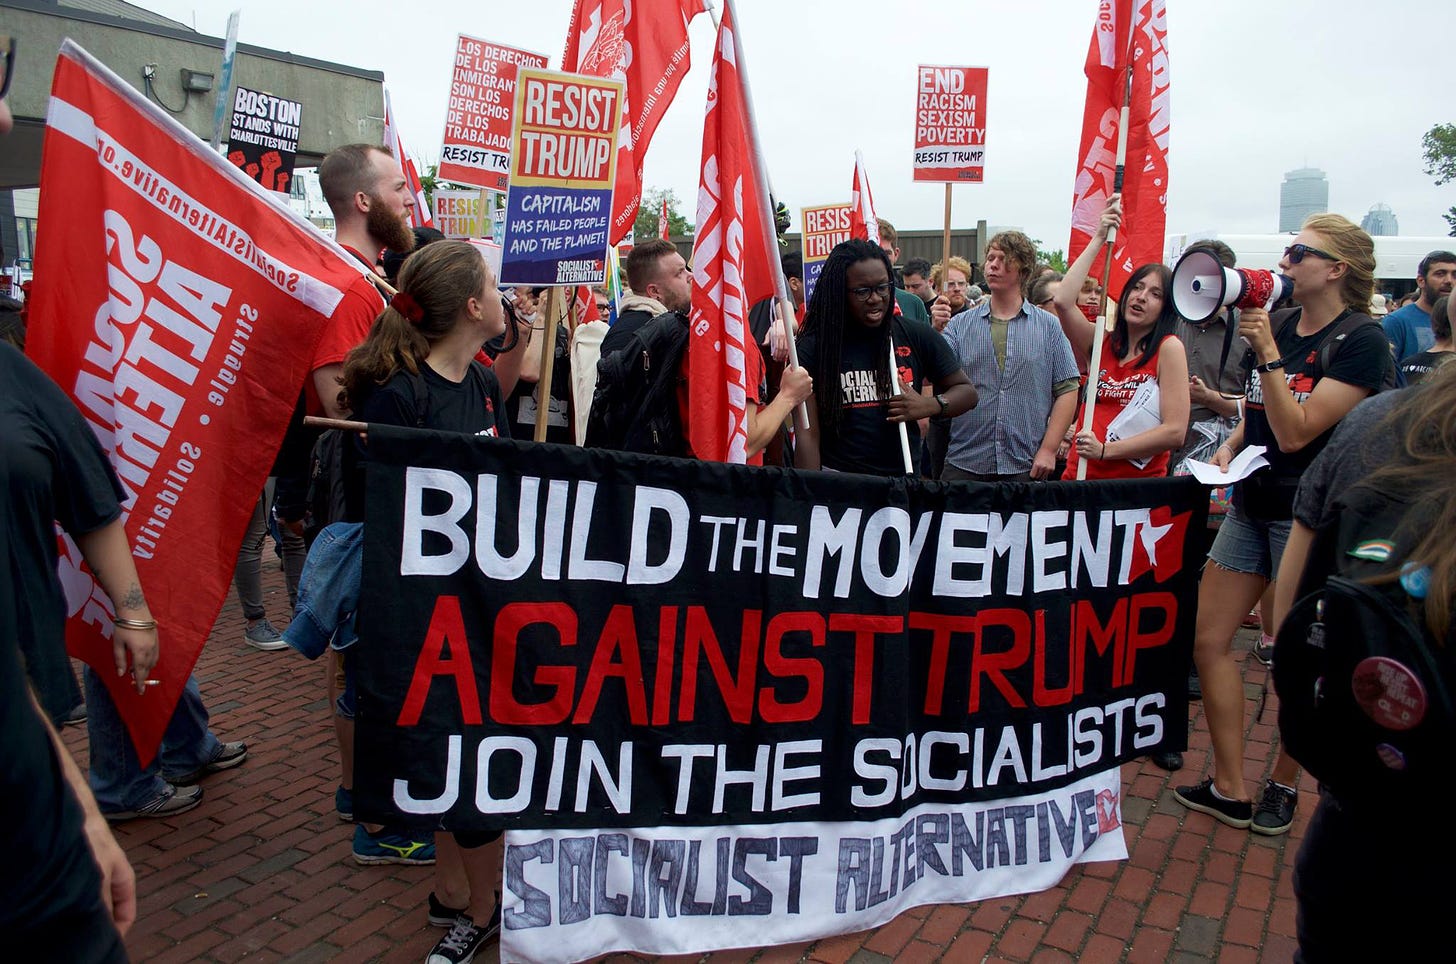 Protes anti Trump oleh kelompok sosialis di Amerika.